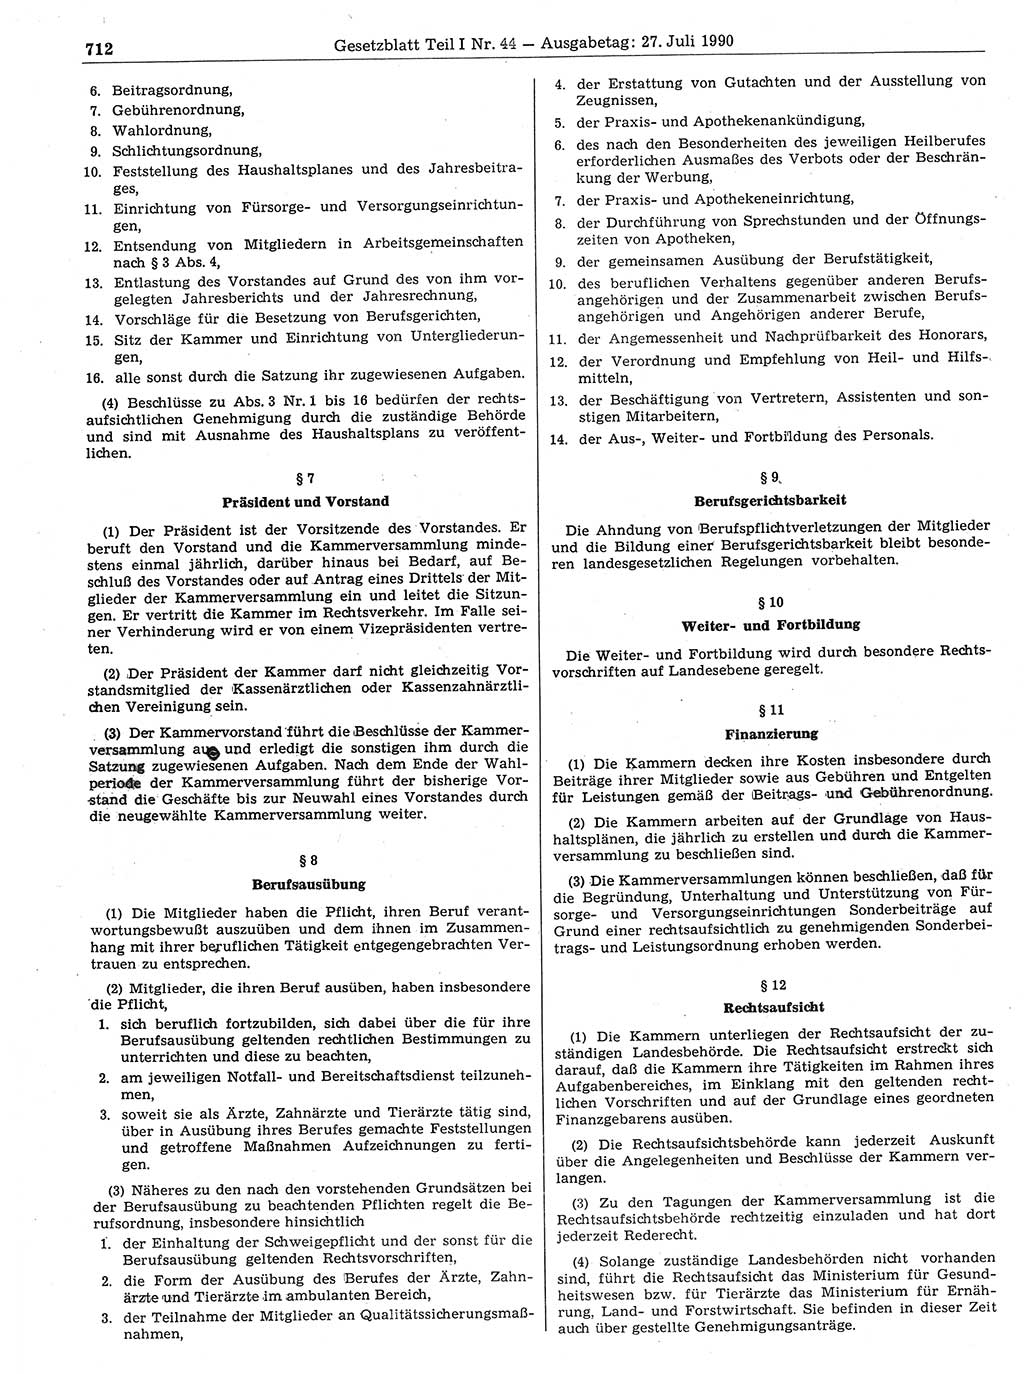 Gesetzblatt (GBl.) der Deutschen Demokratischen Republik (DDR) Teil Ⅰ 1990, Seite 712 (GBl. DDR Ⅰ 1990, S. 712)